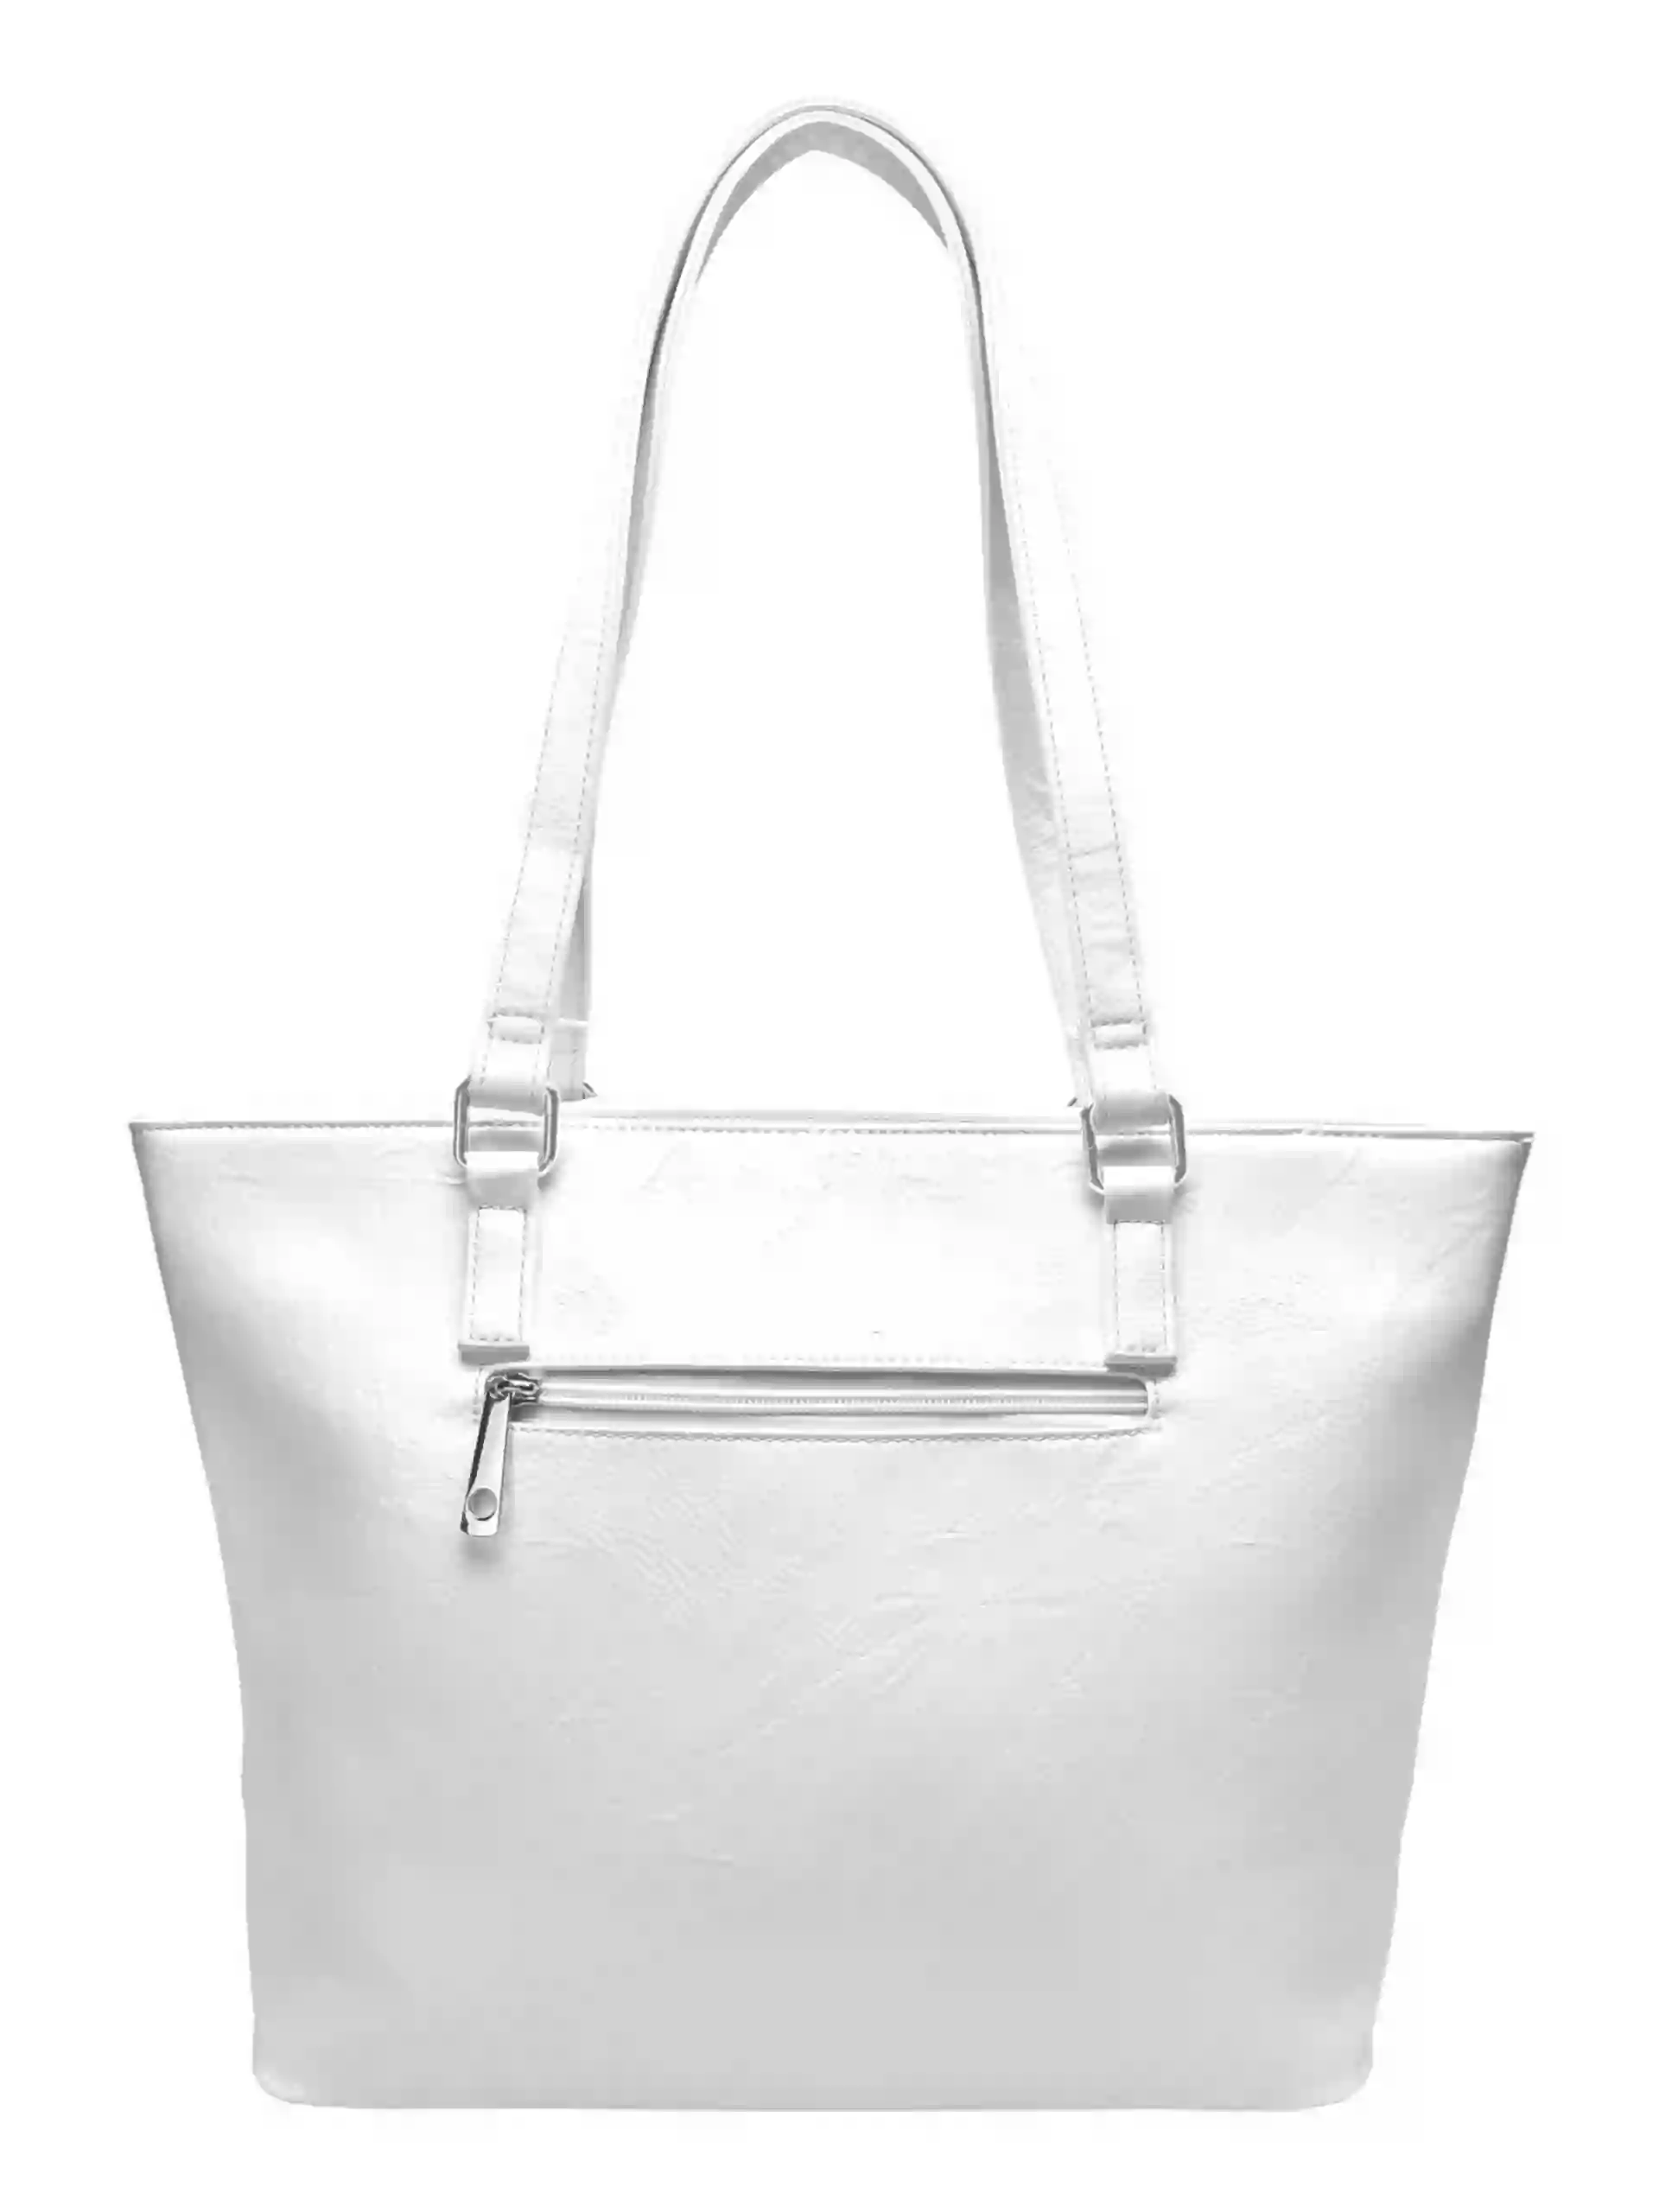 Bílá dámská kabelka přes rameno se vzory, Tapple, H17224, zadní strana kabelky přes rameno